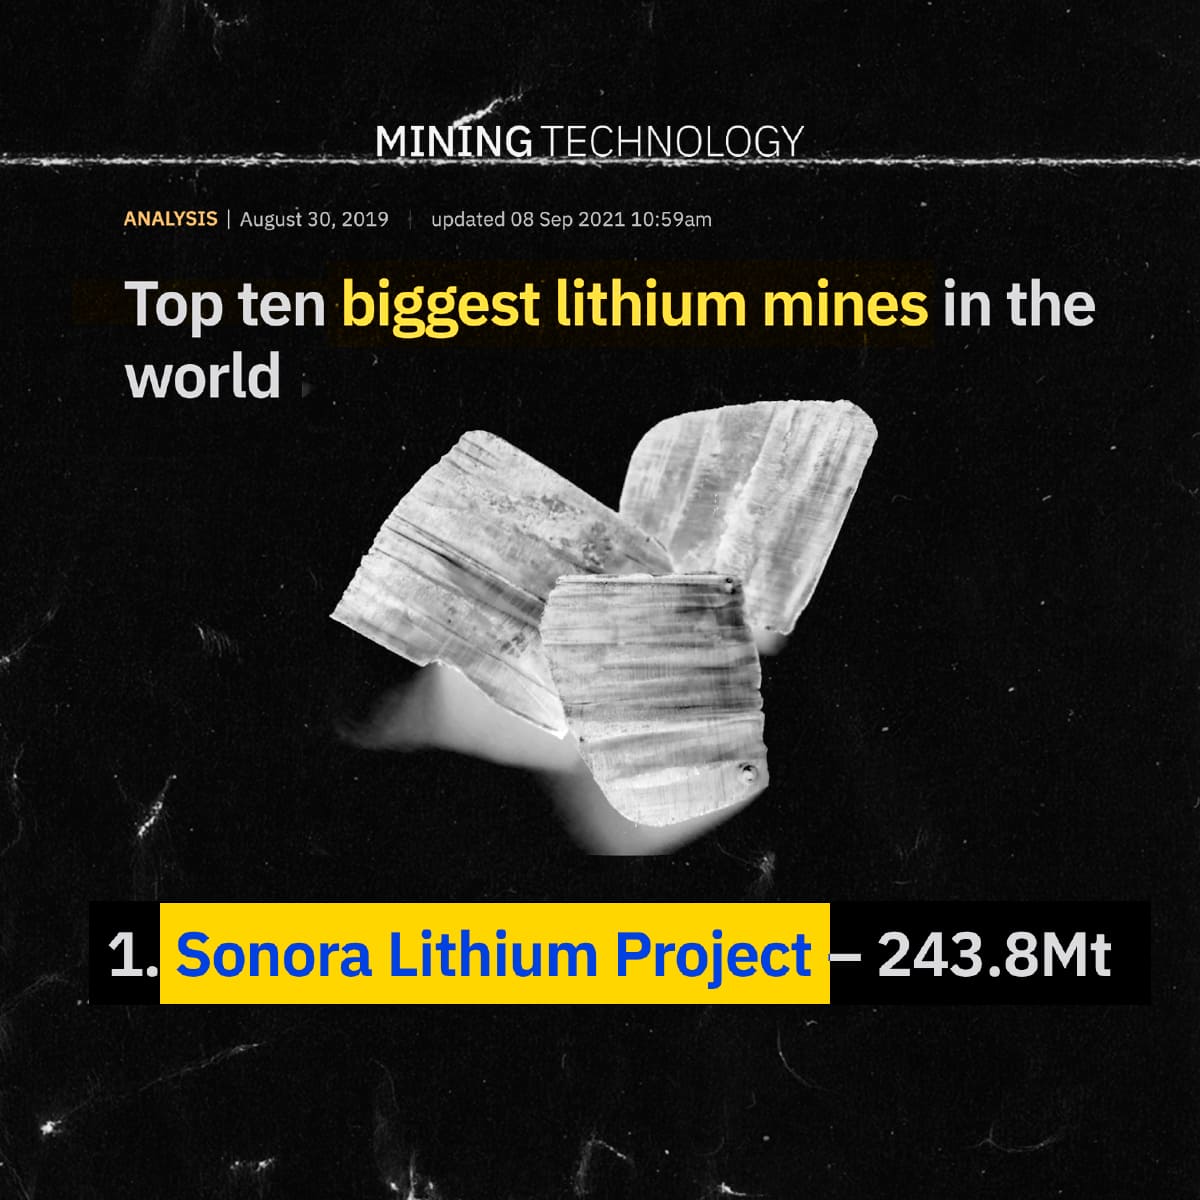 Publicación de Mining Technology sobre el Proyecto Sonora Lithium